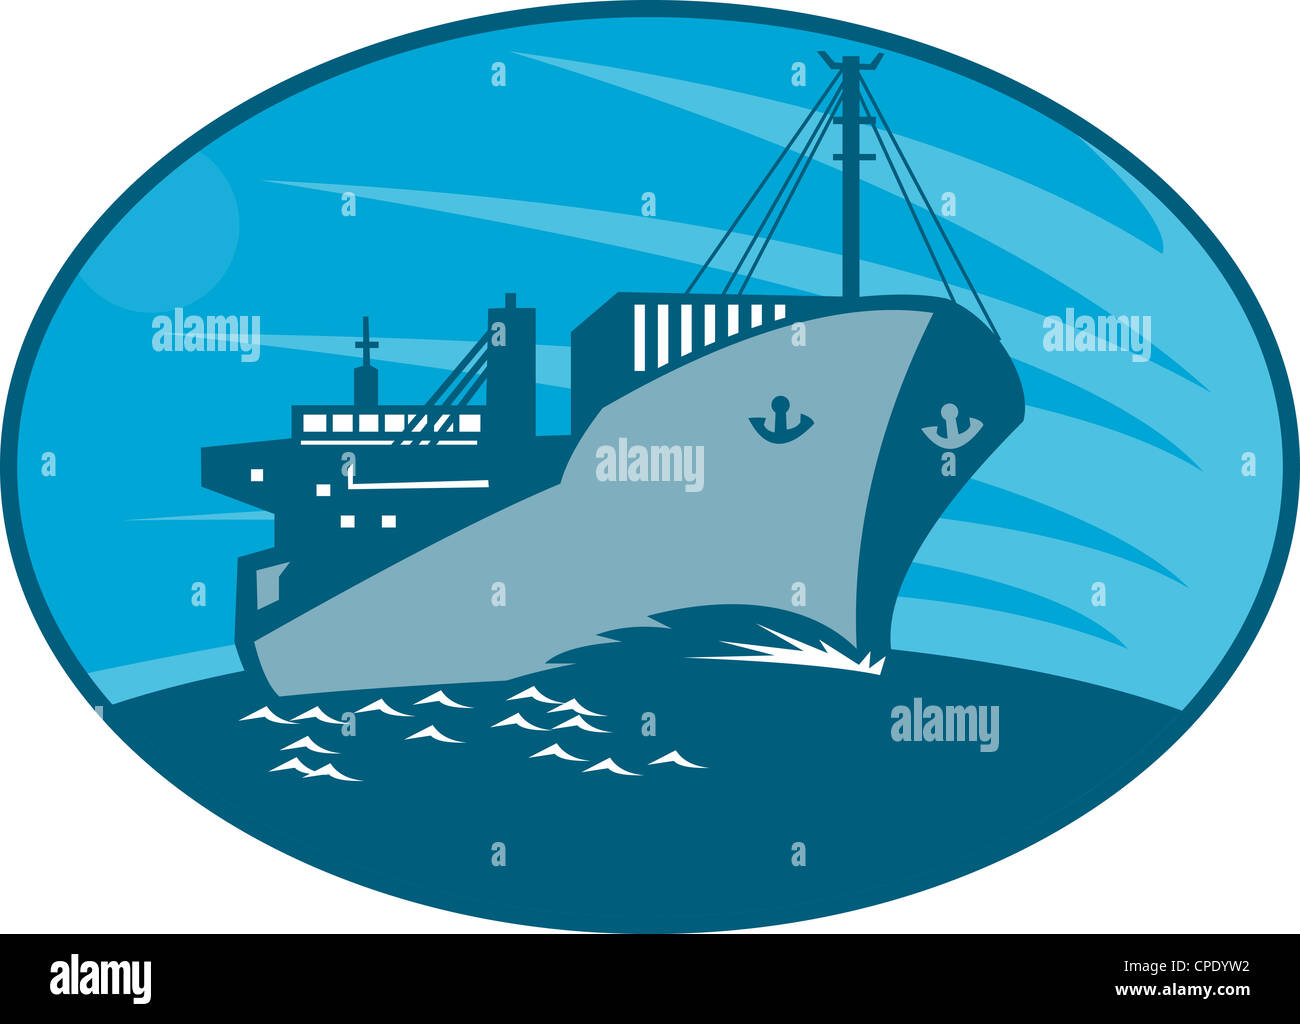 Illustrazione di un contenitore di carico della nave cargo vela sul mare fatto in stile retrò imposta all'interno di ellisse. Foto Stock